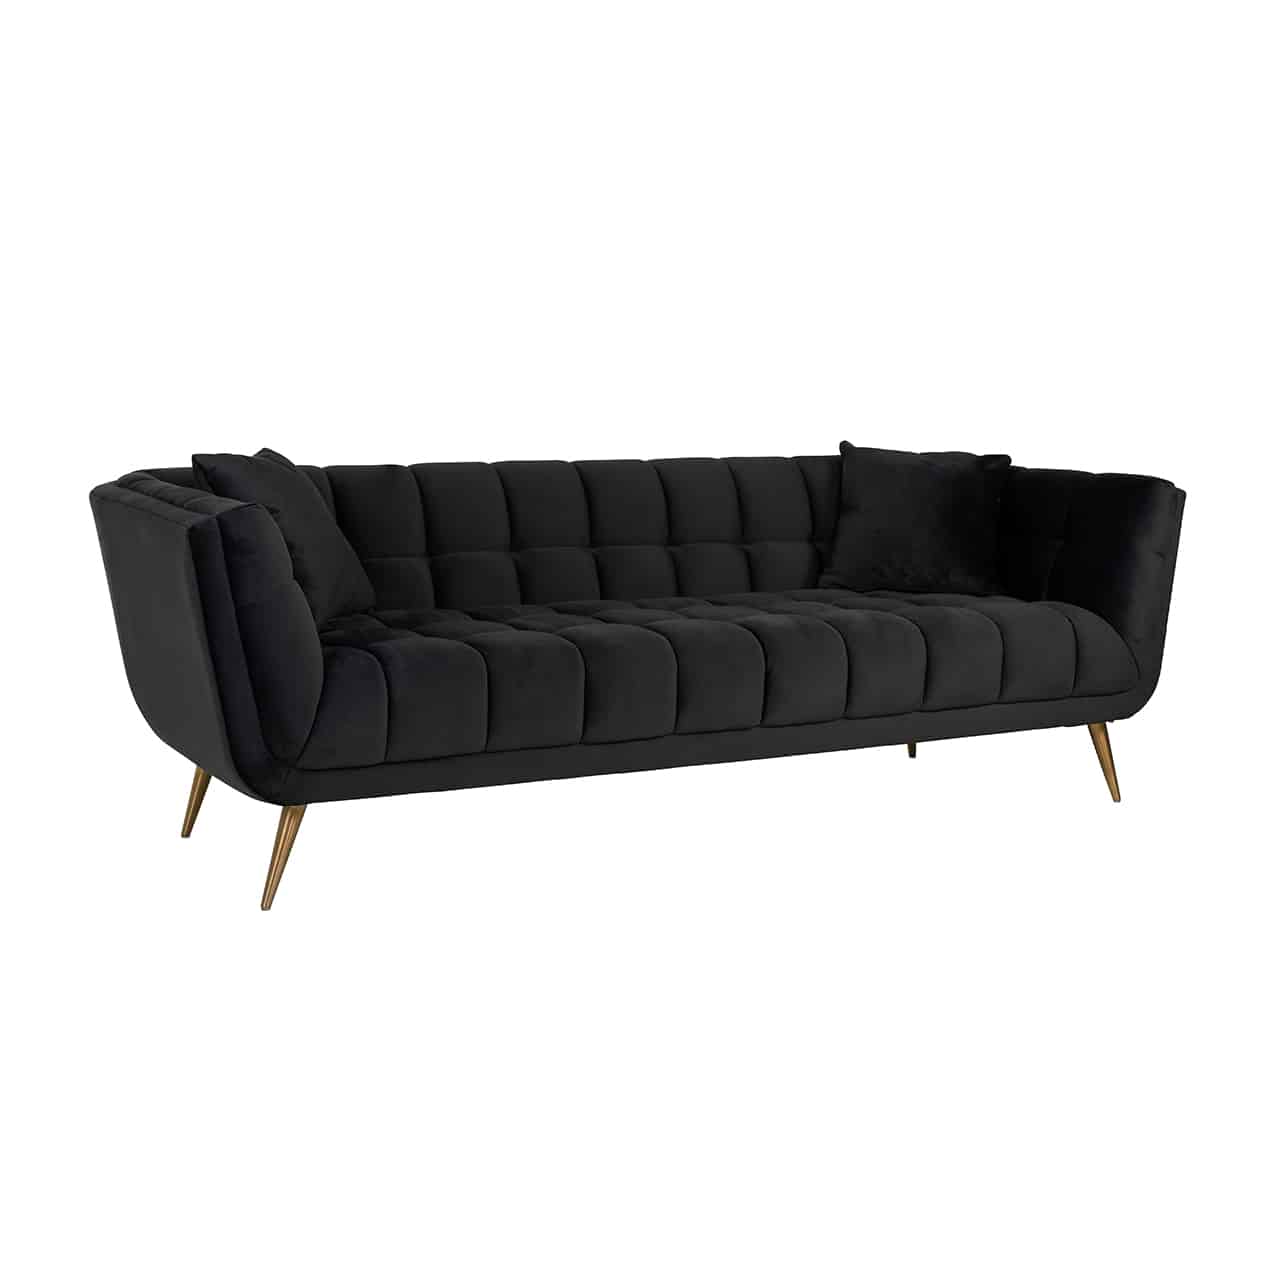 Modernes Sofa in anthrazit mit umlaufender Lehne, Innenseite mit quadratischer, Steppung; in beiden Ecken je ein quadratisches Kissen; Beine in matt gold, leicht nach außen stehend und nach unten spitz zulaufend.